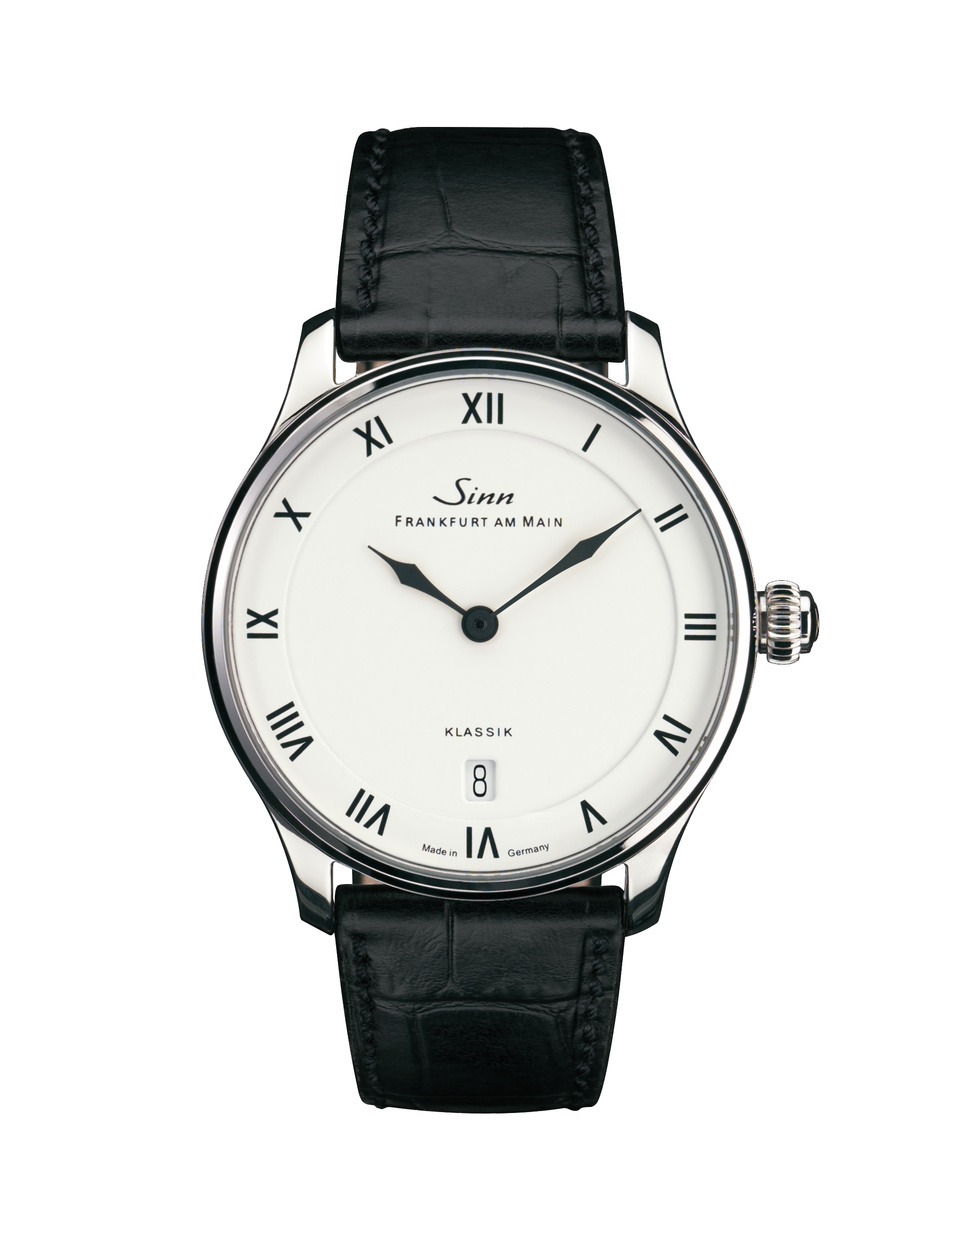 Et la prochaine ? Une montre "habillée", cadran blanc : Stowa, Longines, Cartier X1736-10